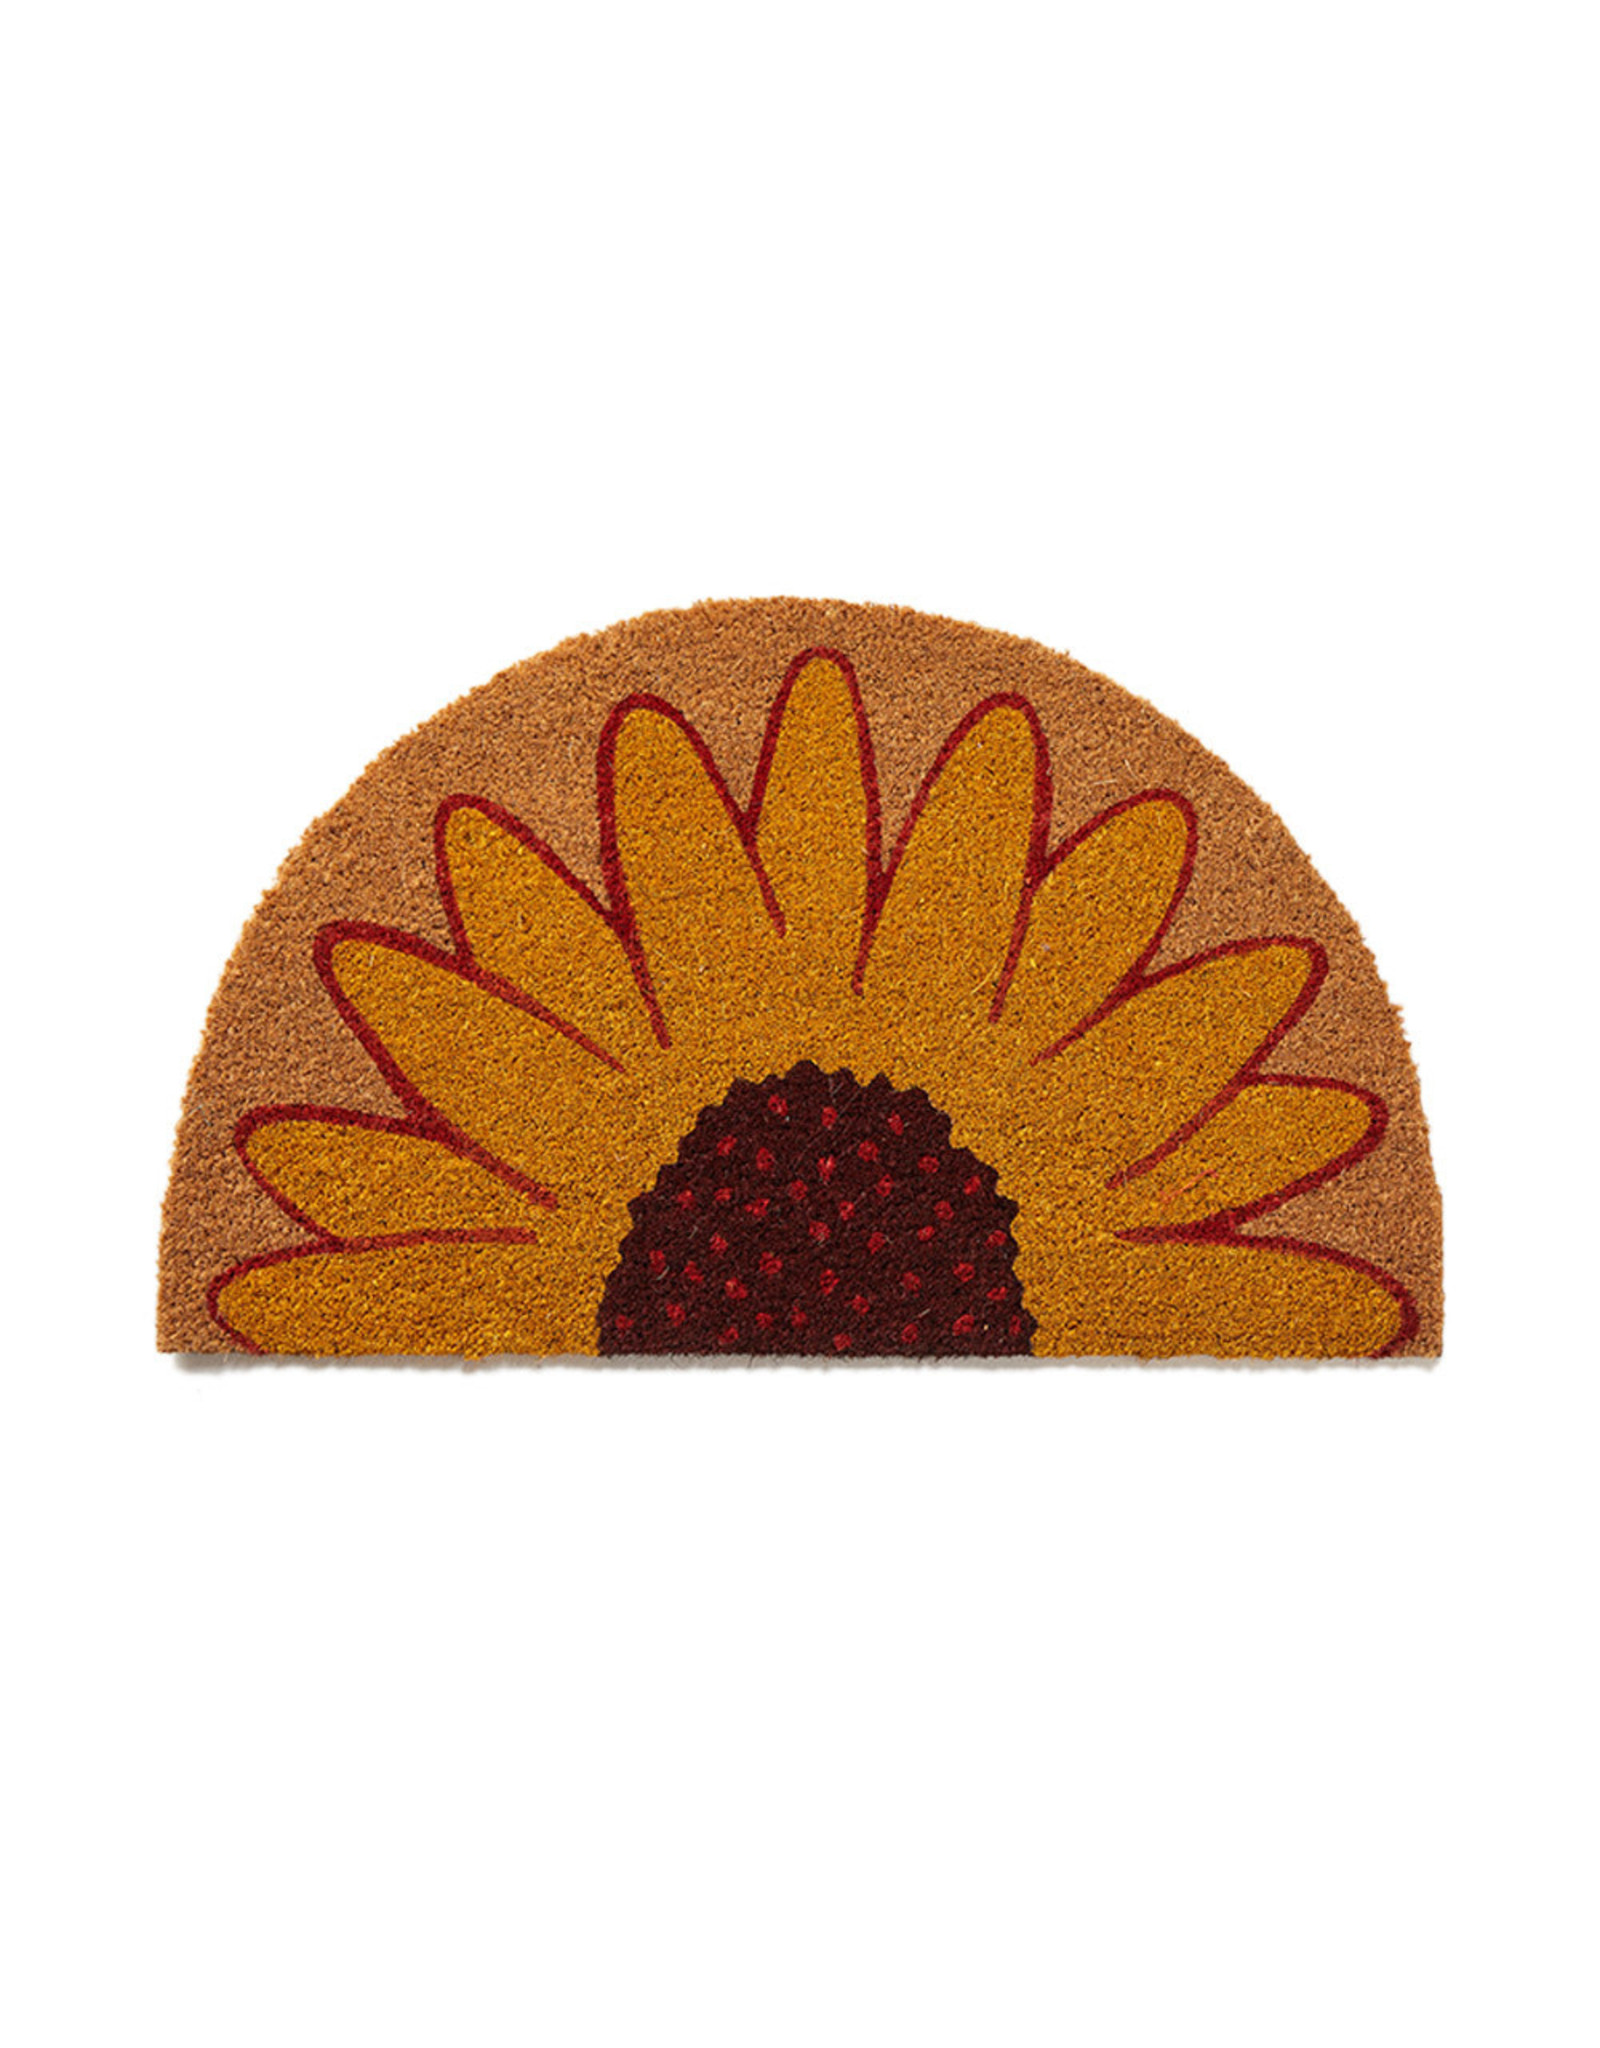 India Sunflower Coconut Fibre Mat, India